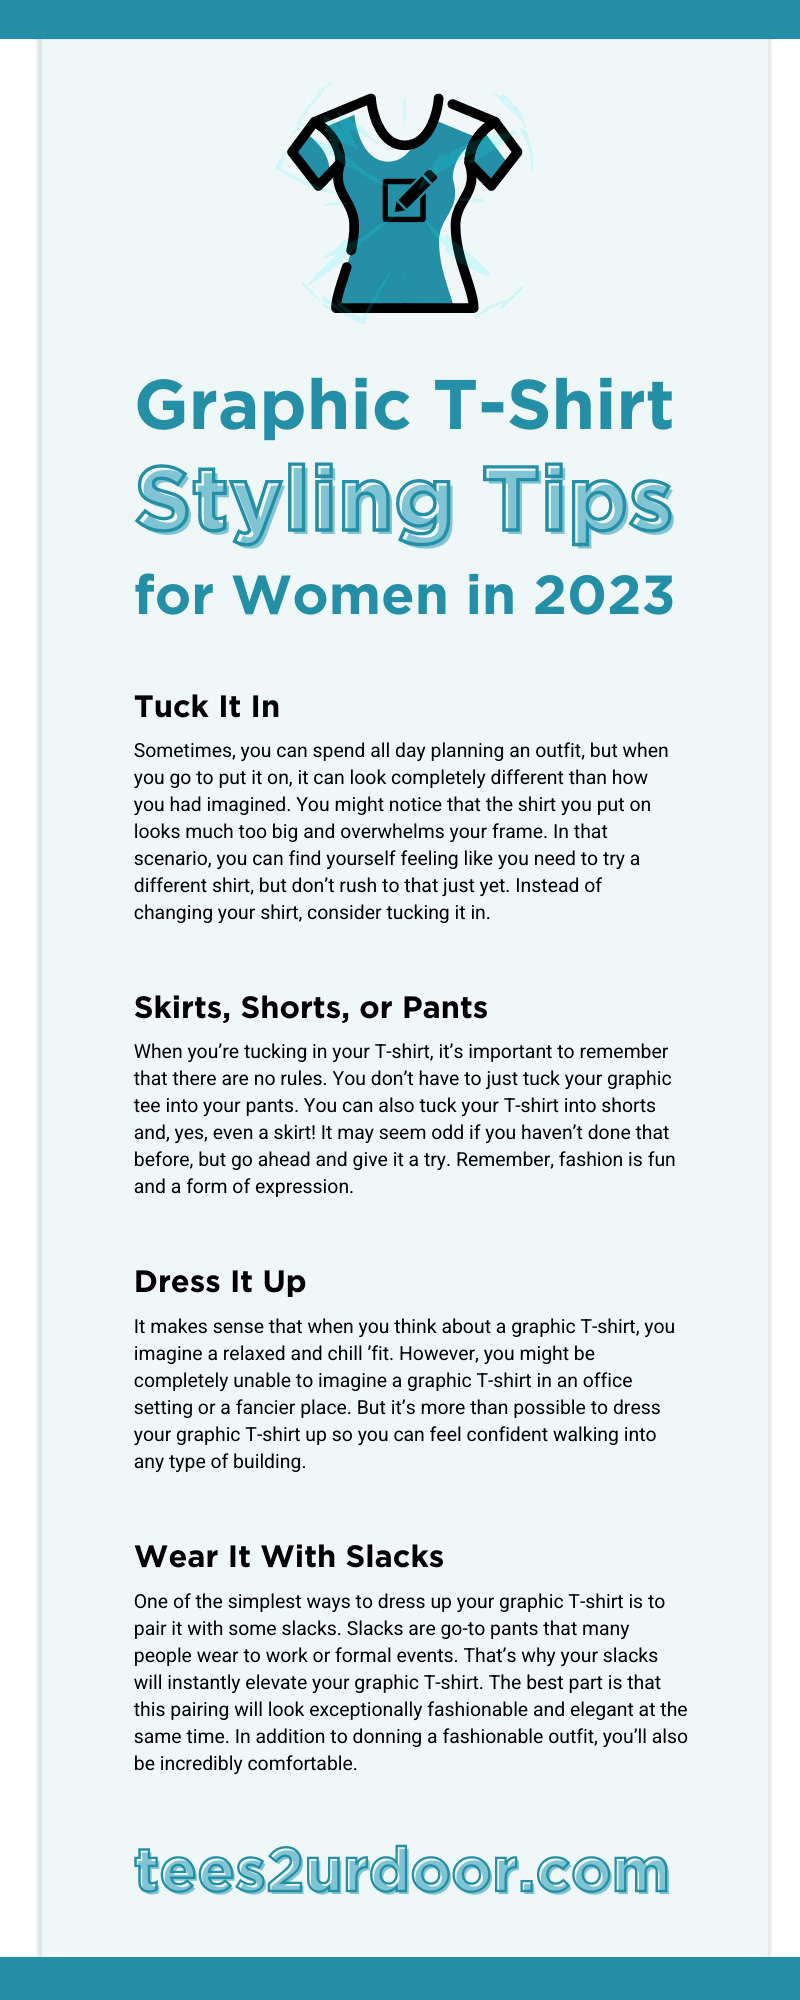 https://www.tees2urdoor.com/product_images/uploaded_images/tees2urdoor-206711-tshirt-tips-women-infographic1.jpg